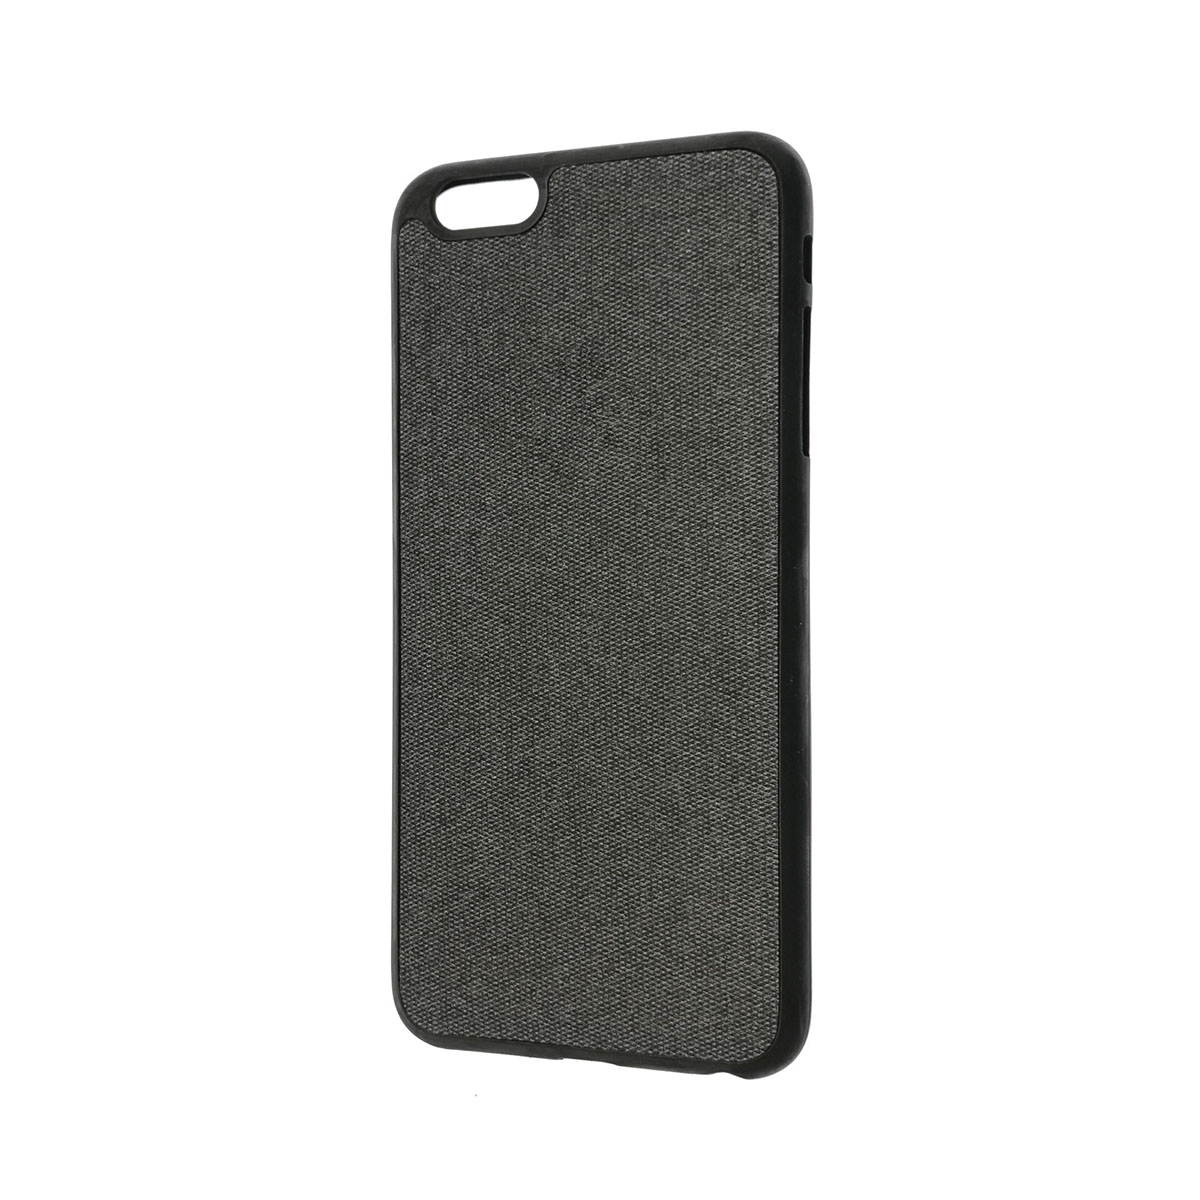 Чехол накладка для APPLE iPhone 6 Plus, 6S Plus, экокожа, силикон, джинс, цвет черный.